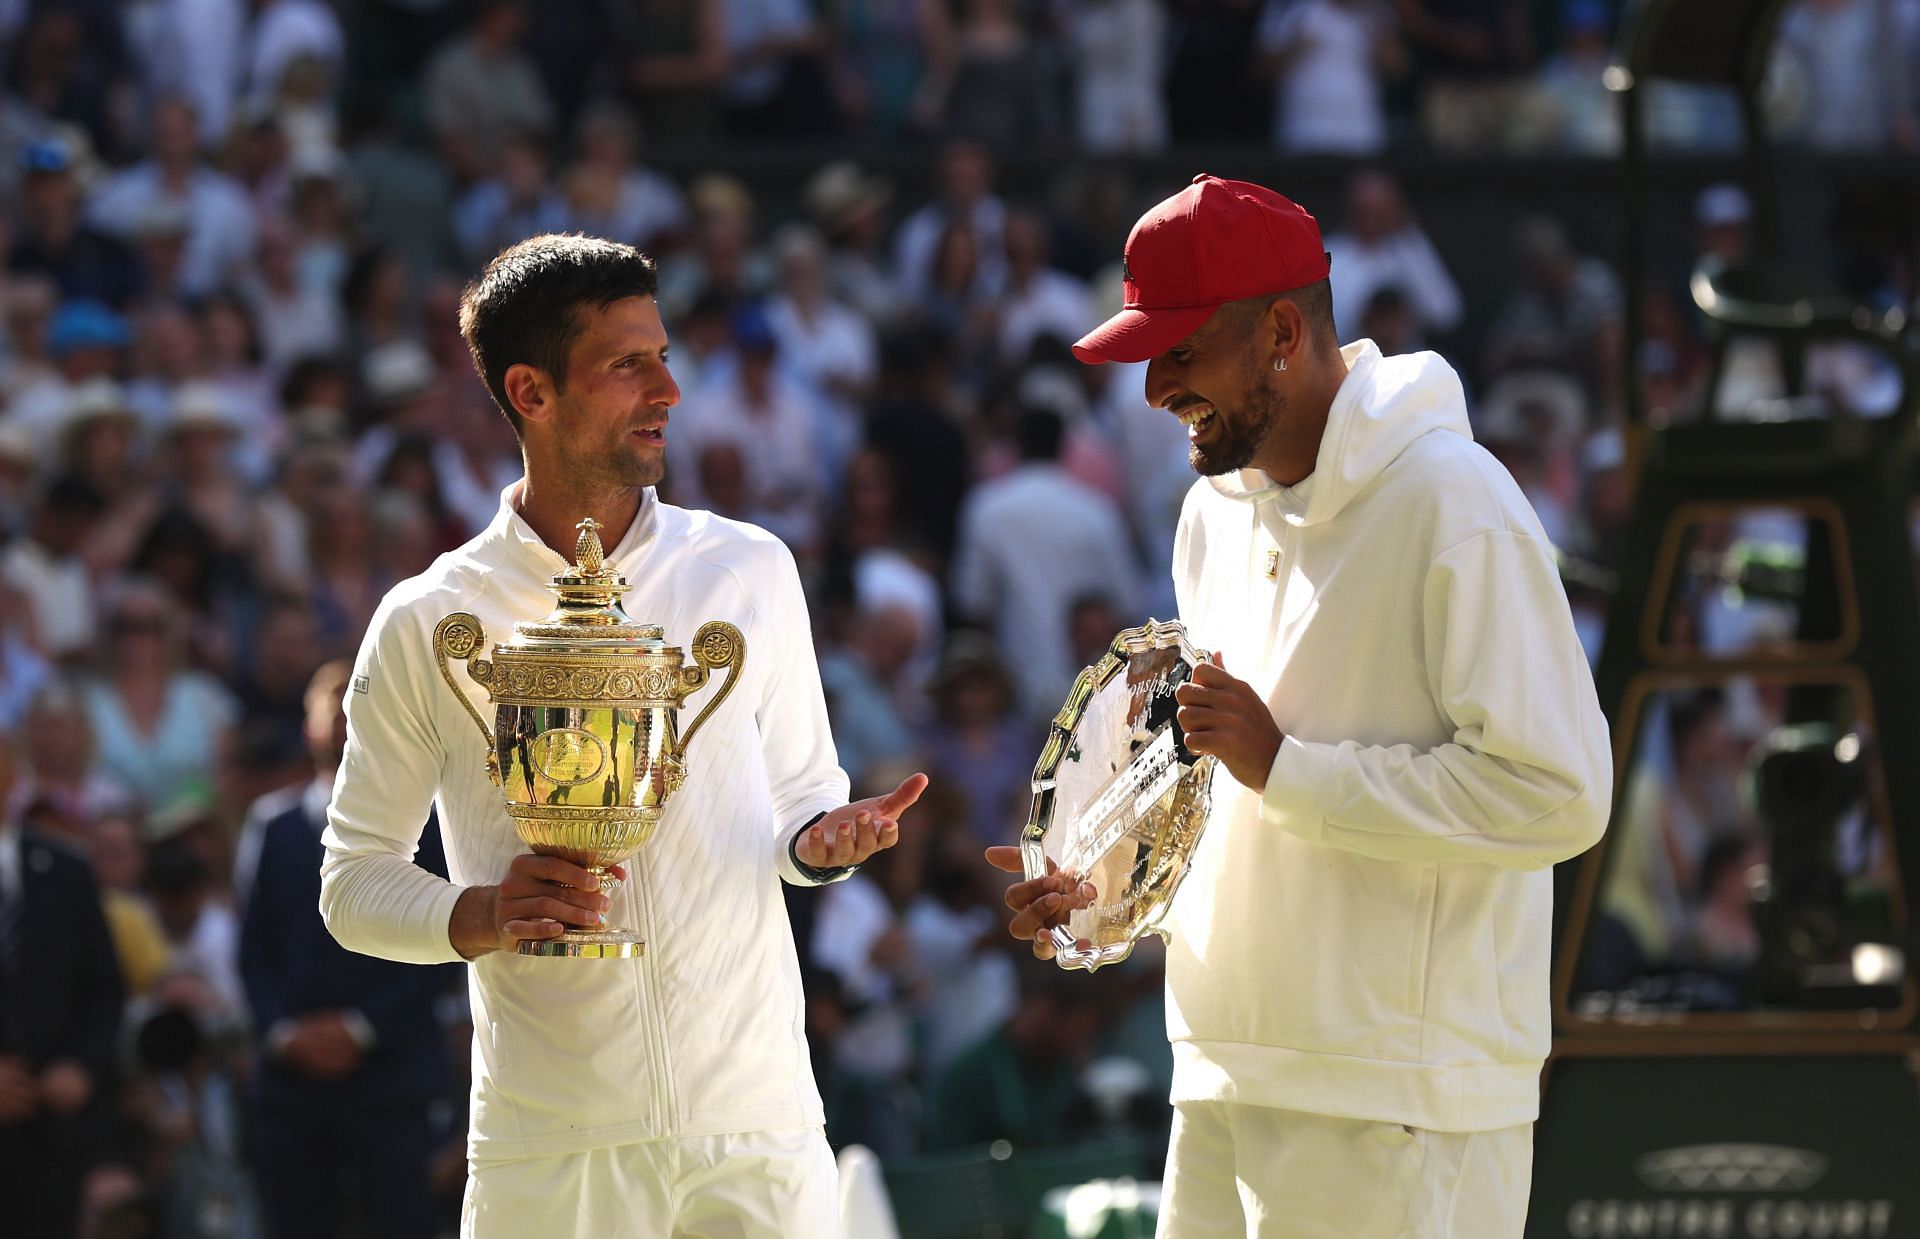 Novak Djokovic and Nick Kyrgios at the Wimbledon 2022 tennis tournament